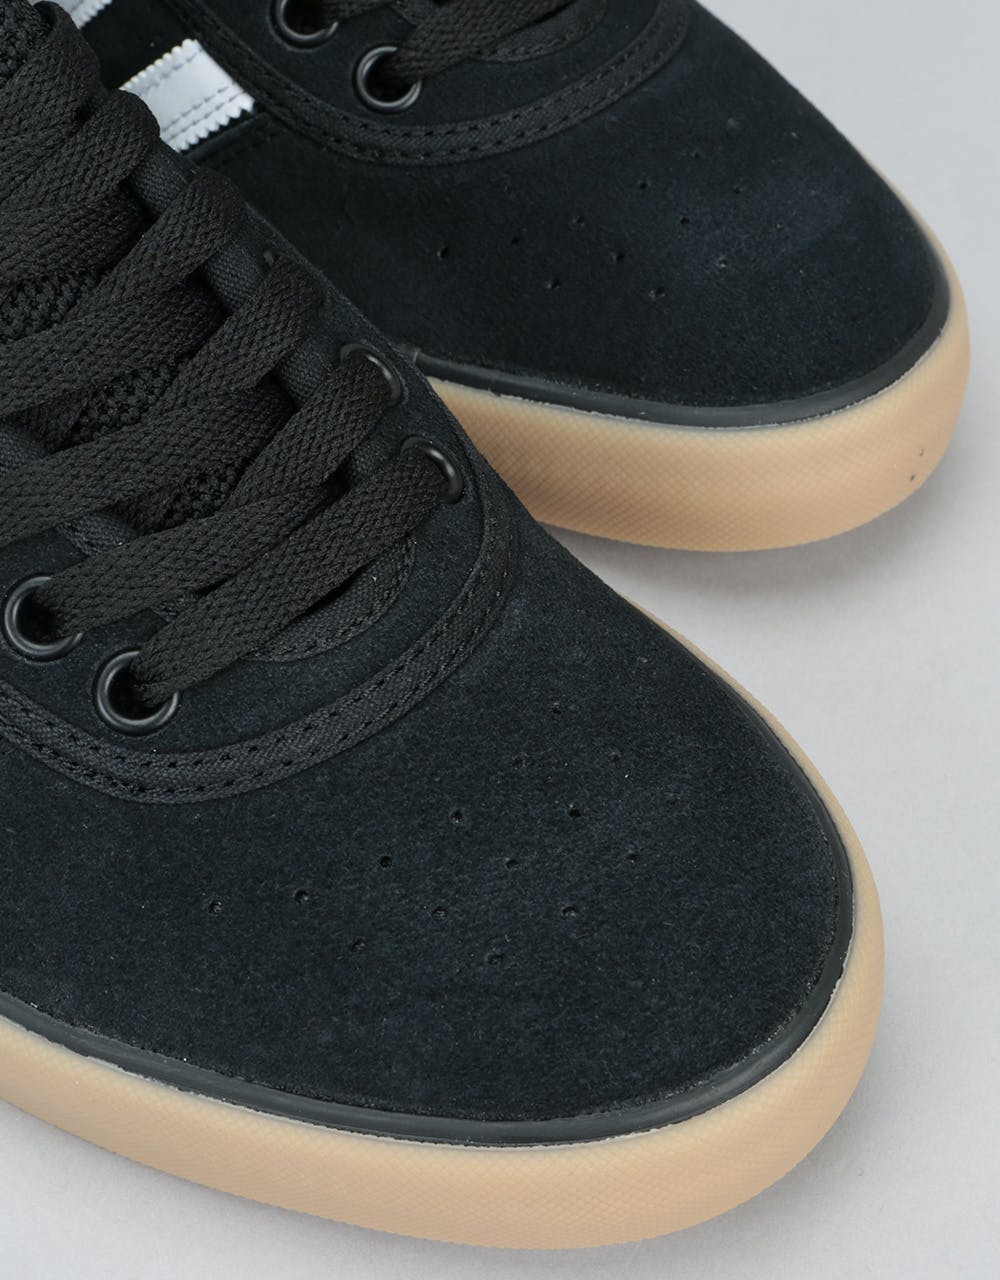 Adidas Lucas Premiere ADV Skate Shoes - Core Black/Core Black/Gum